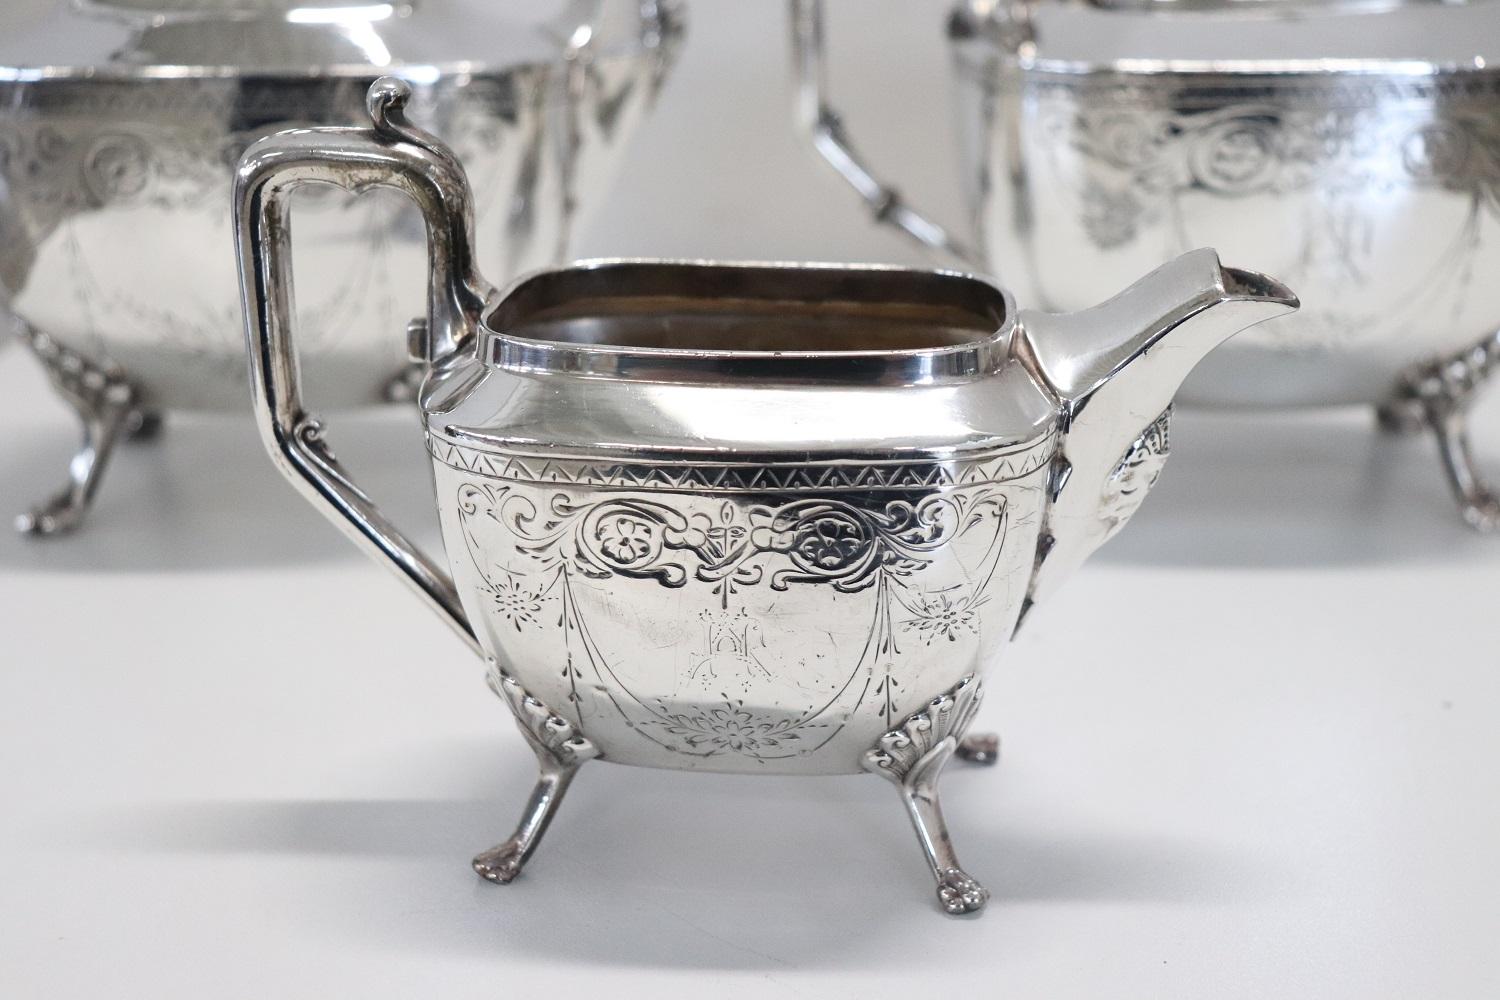 Schönes Tee- und Kaffeeservice aus Silber vom Ende des 19. Jahrhunderts. Raffinierte, fein ziselierte Verzierungen. Mark Reed & Barton. Perfekt, um einen Tisch mit Klasse zu verschönern.